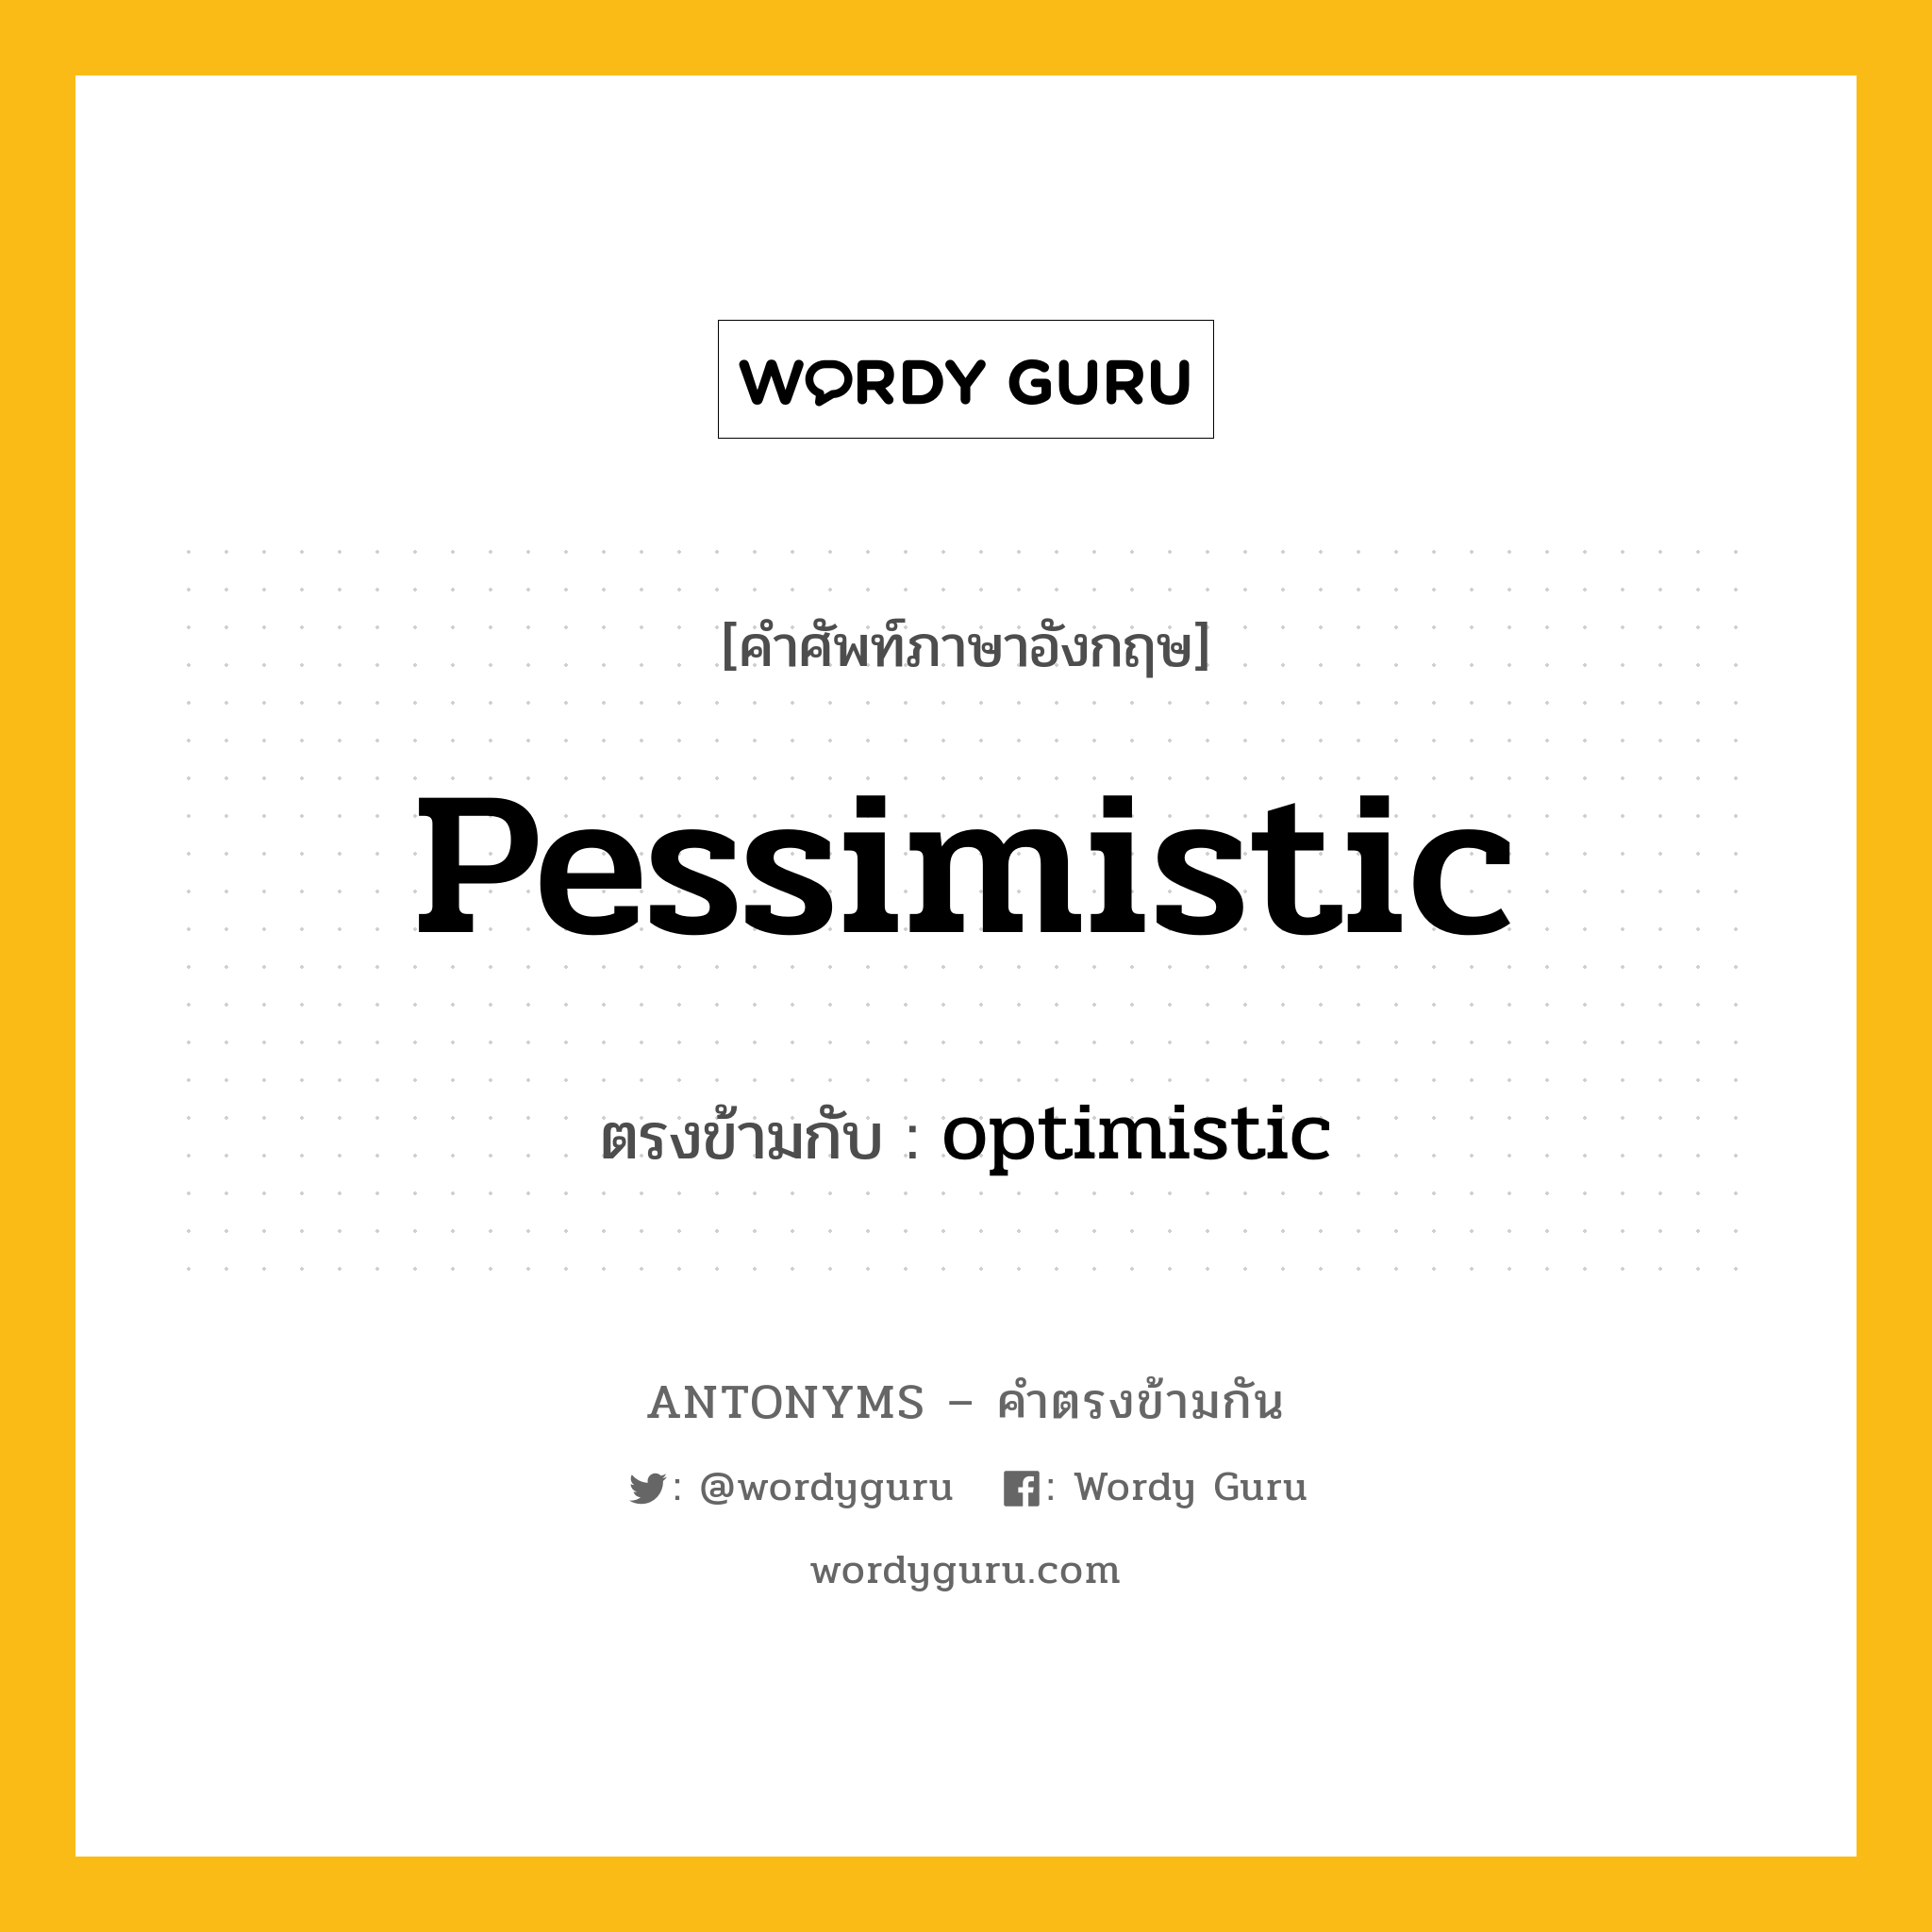 pessimistic เป็นคำตรงข้ามกับคำไหนบ้าง?, คำศัพท์ภาษาอังกฤษ pessimistic ตรงข้ามกับ optimistic หมวด optimistic